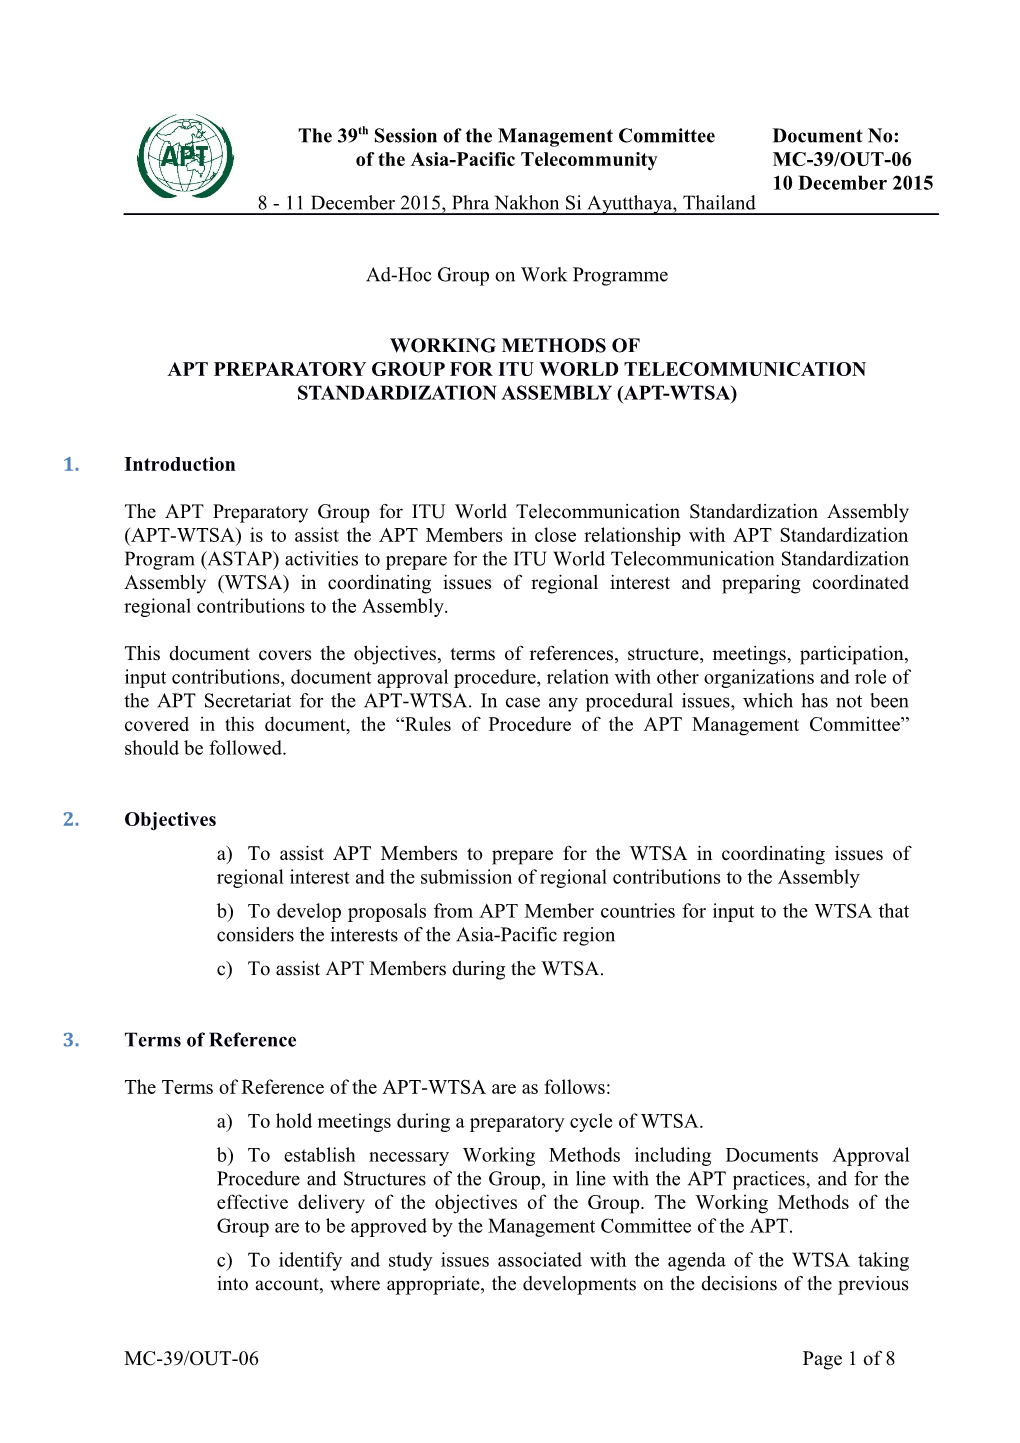 Apt Preparatory Group for Itu World Telecommunication Standardization Assembly (APT-WTSA)